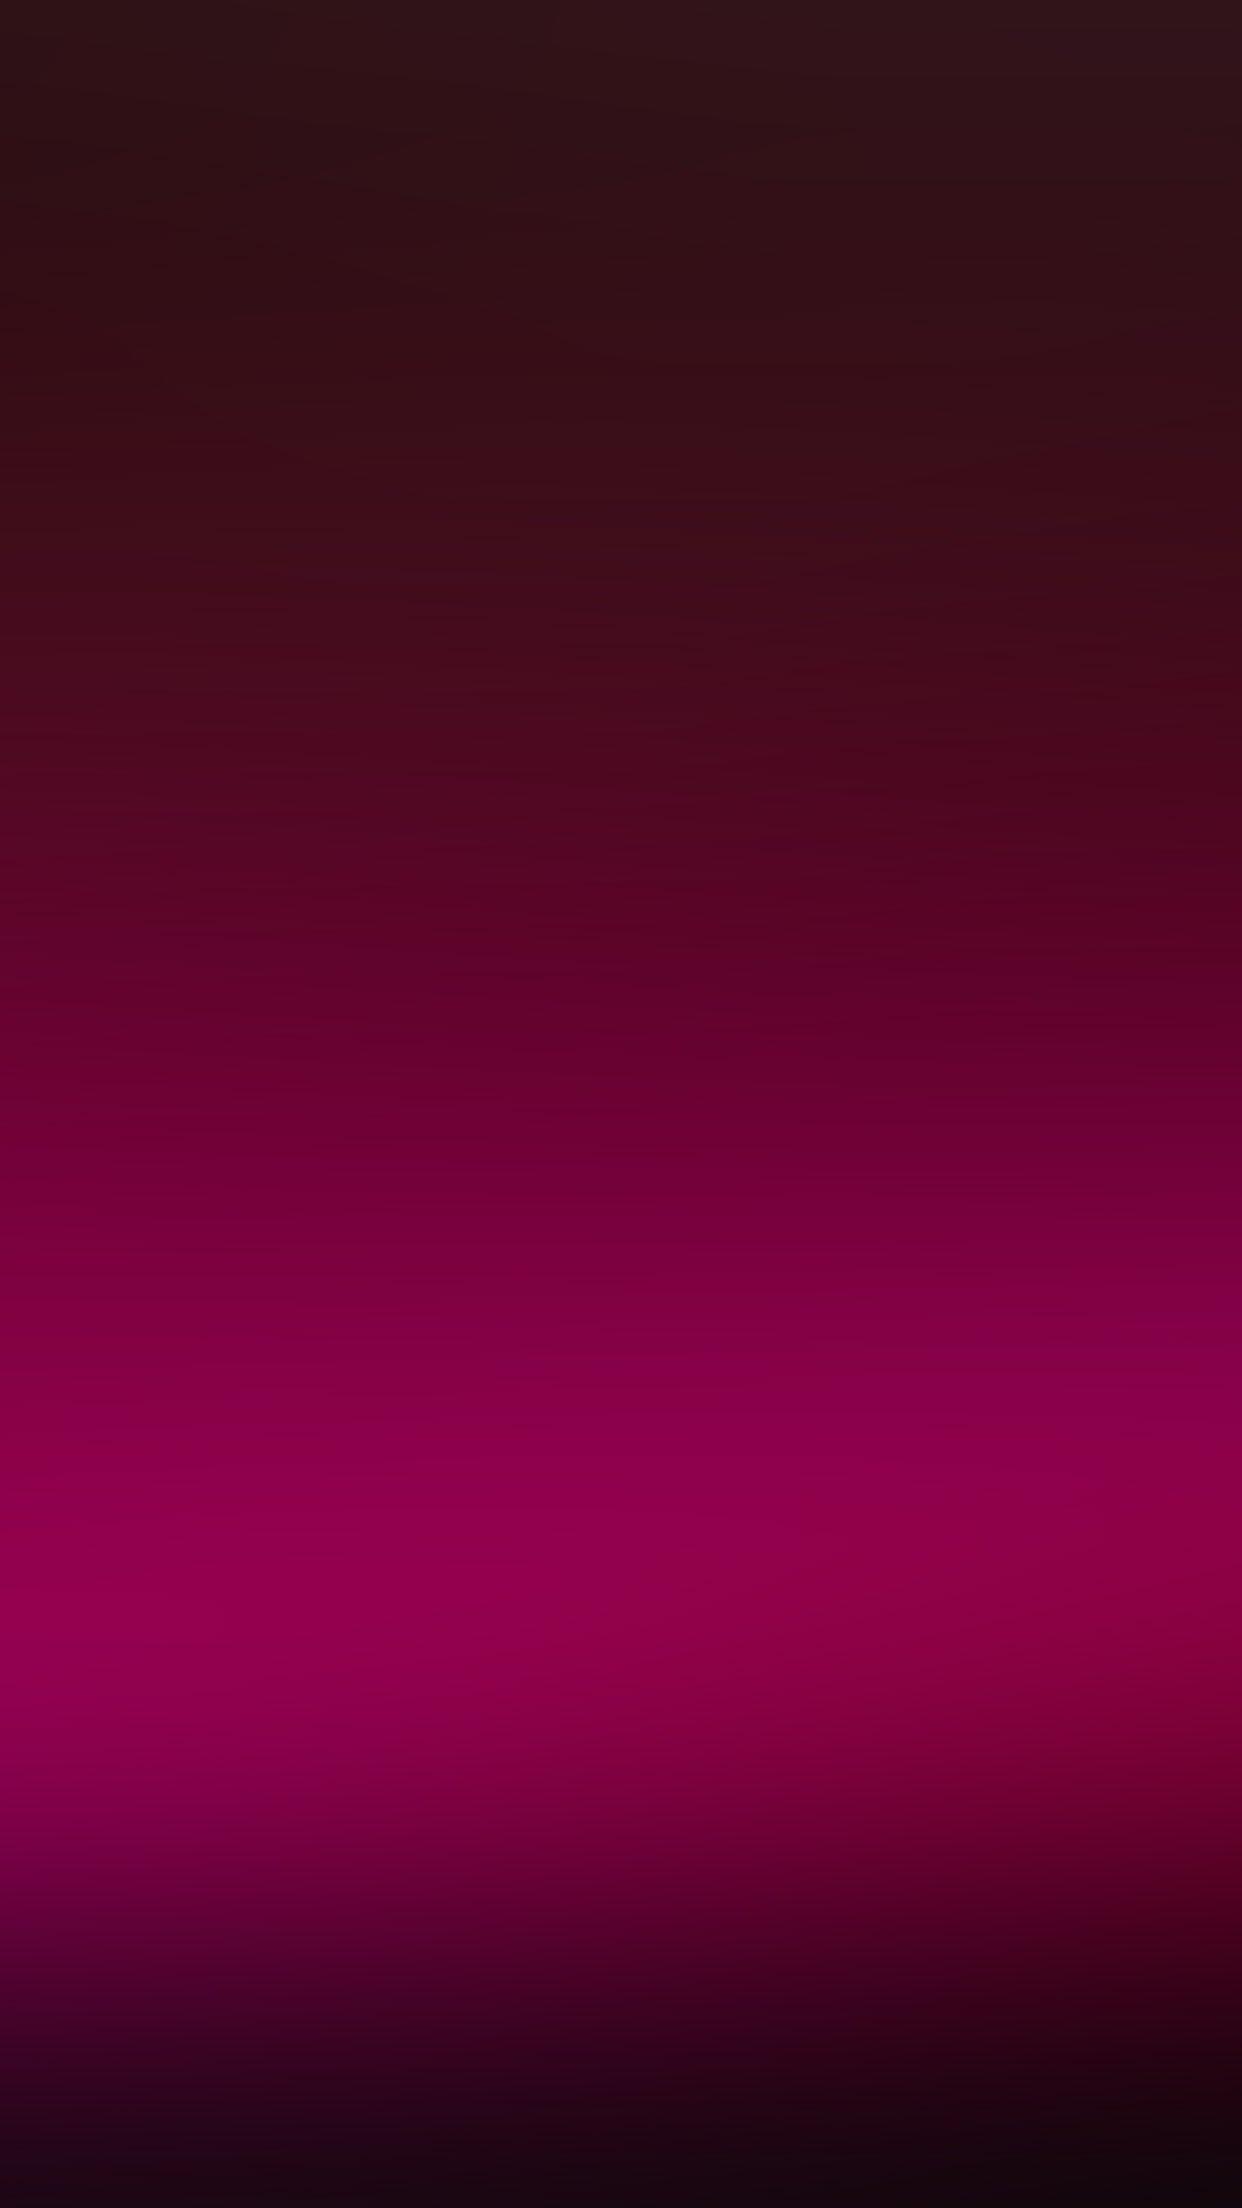 Dark Pink Wallpapers: Màu hồng đậm chỉn chu và đầy đặn sẽ khiến cho chiếc điện thoại của bạn nổi bật hơn bao giờ hết. Chúng sẽ khiến bạn cảm thấy thật sự yên tâm và thỏa mãn khi sử dụng. Hãy cùng xem hình ảnh liên quan để thấy được sức cuốn hút của chúng nhé!